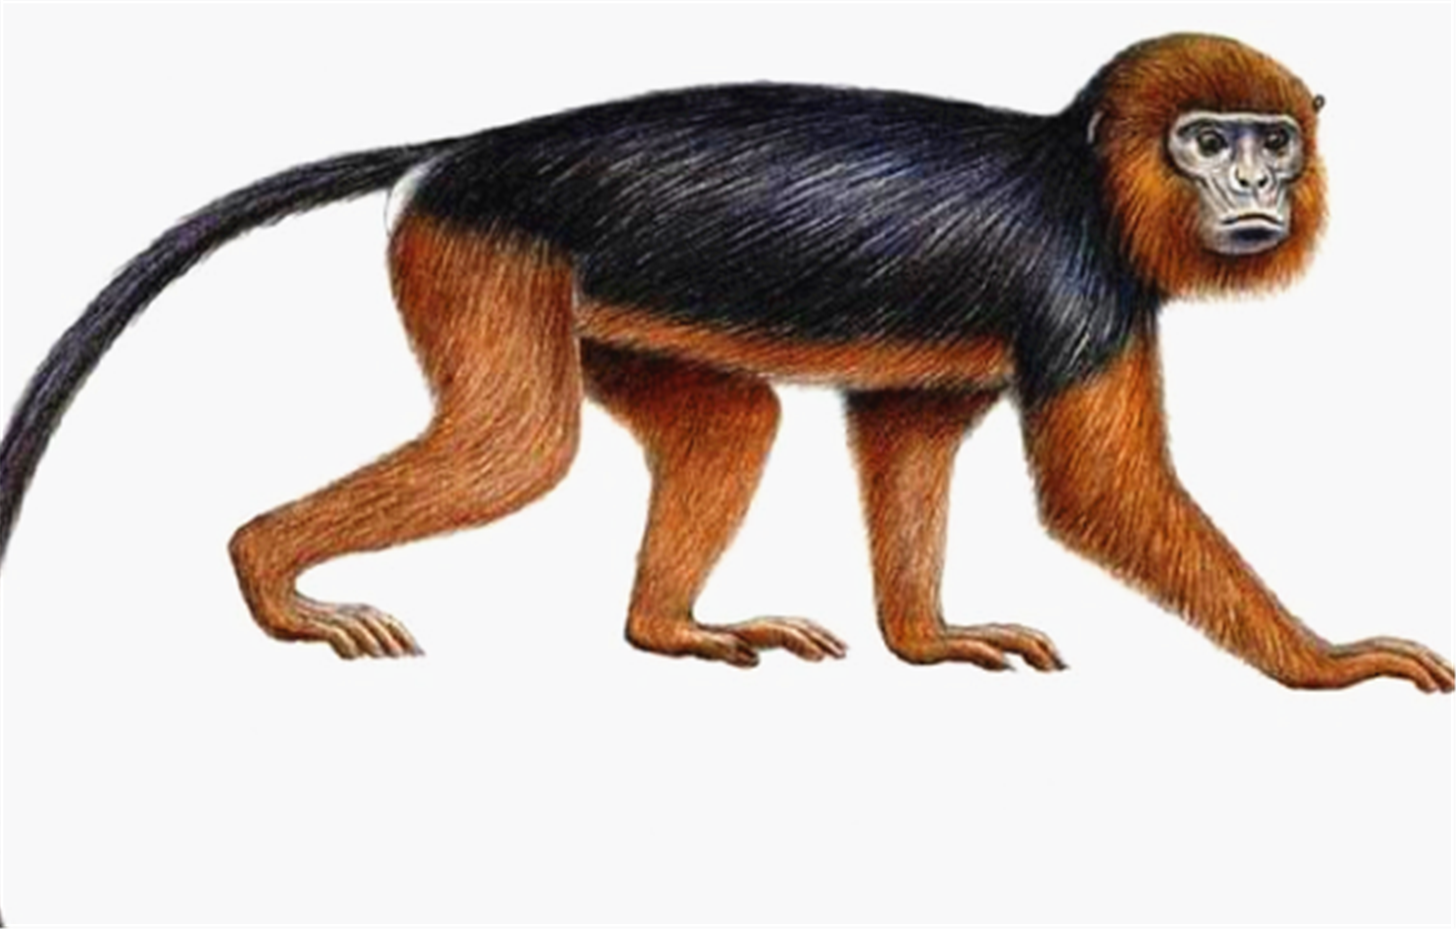 沃尔德伦红疣猴,原产地位西非地区,最早于1933年发现